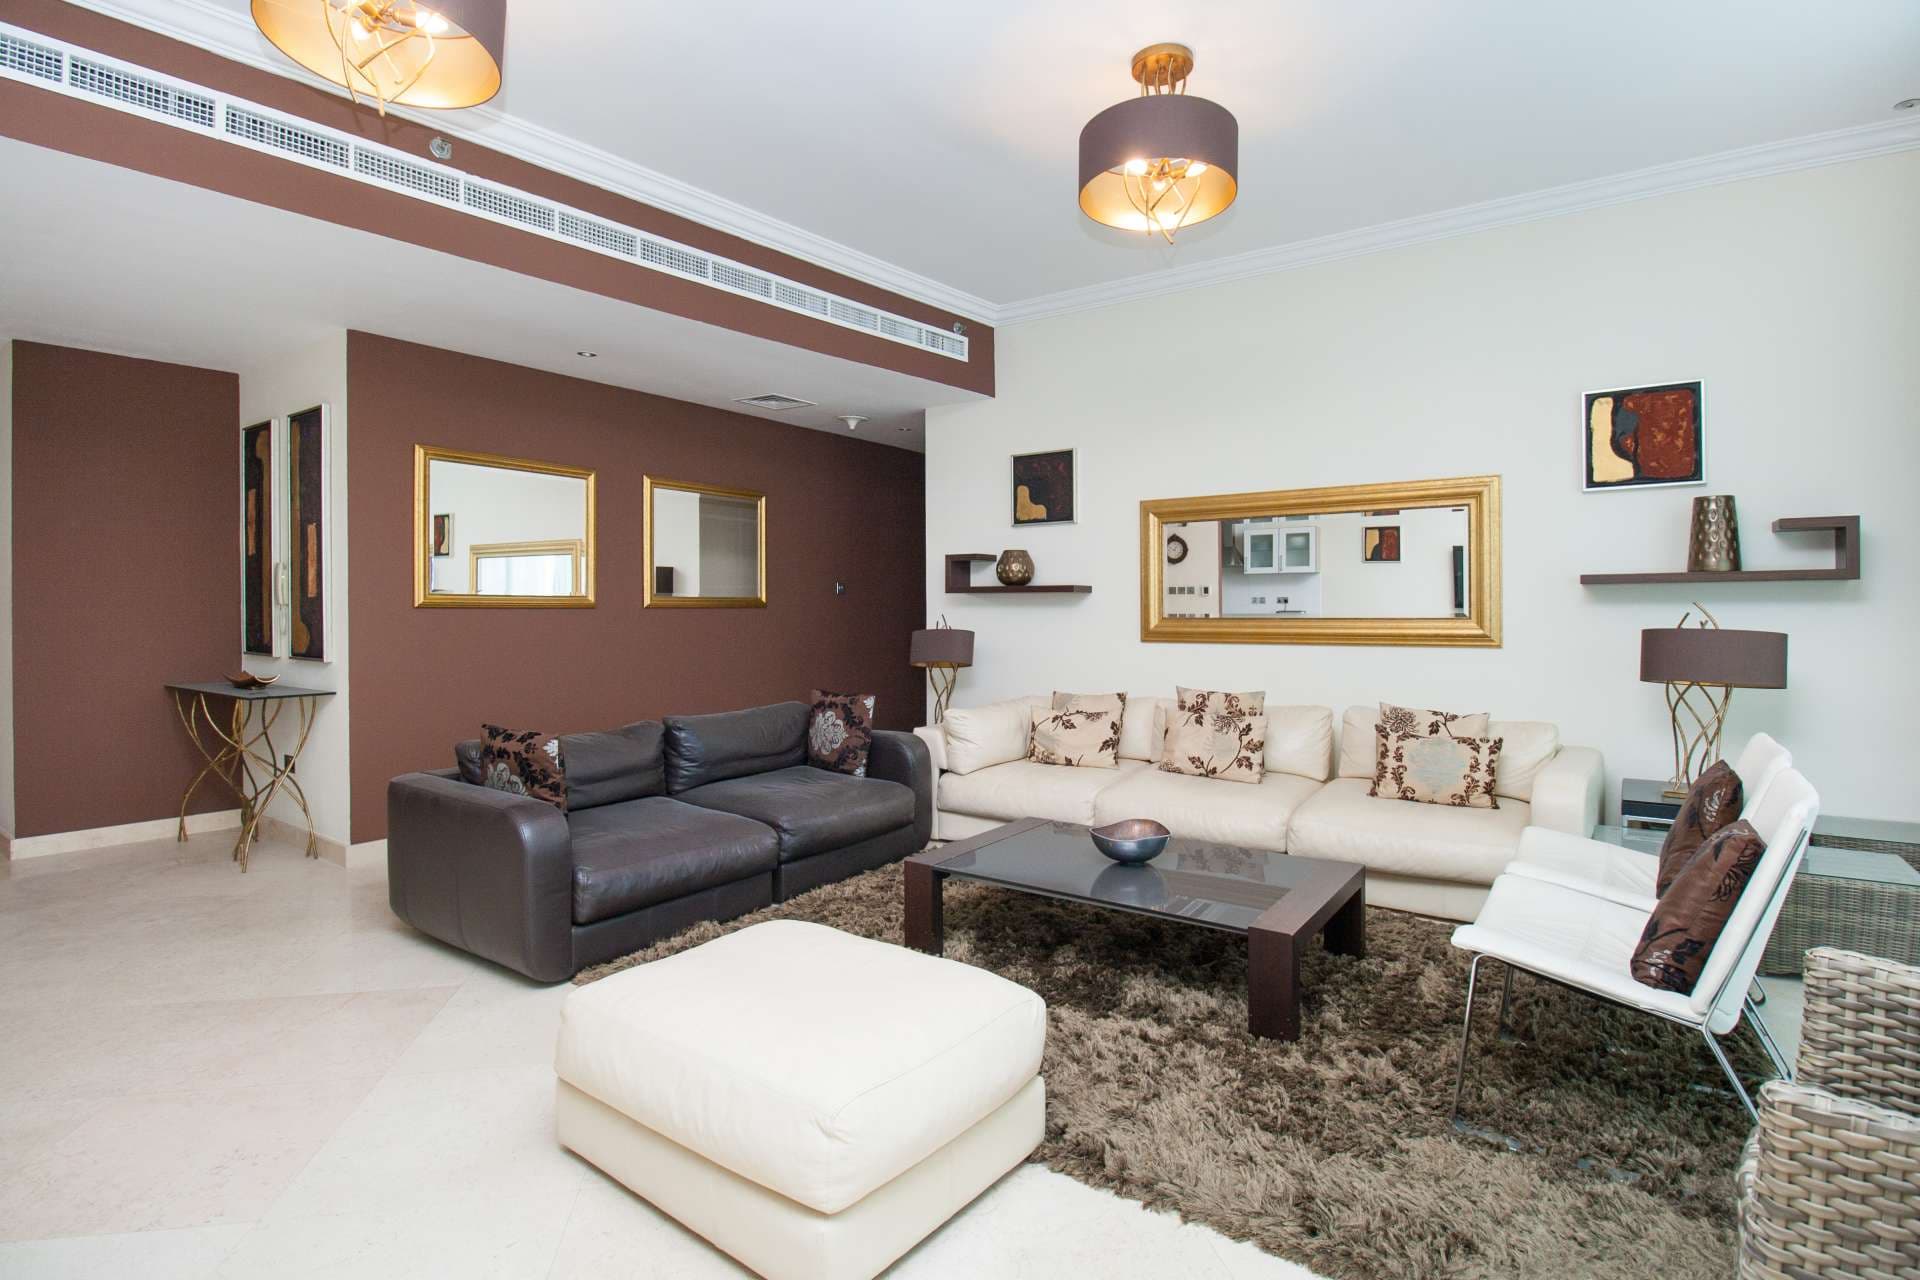 4 Bedroom Apartment For Rent Dorra Bay Lp04868 11284f59a5fbd600.jpg